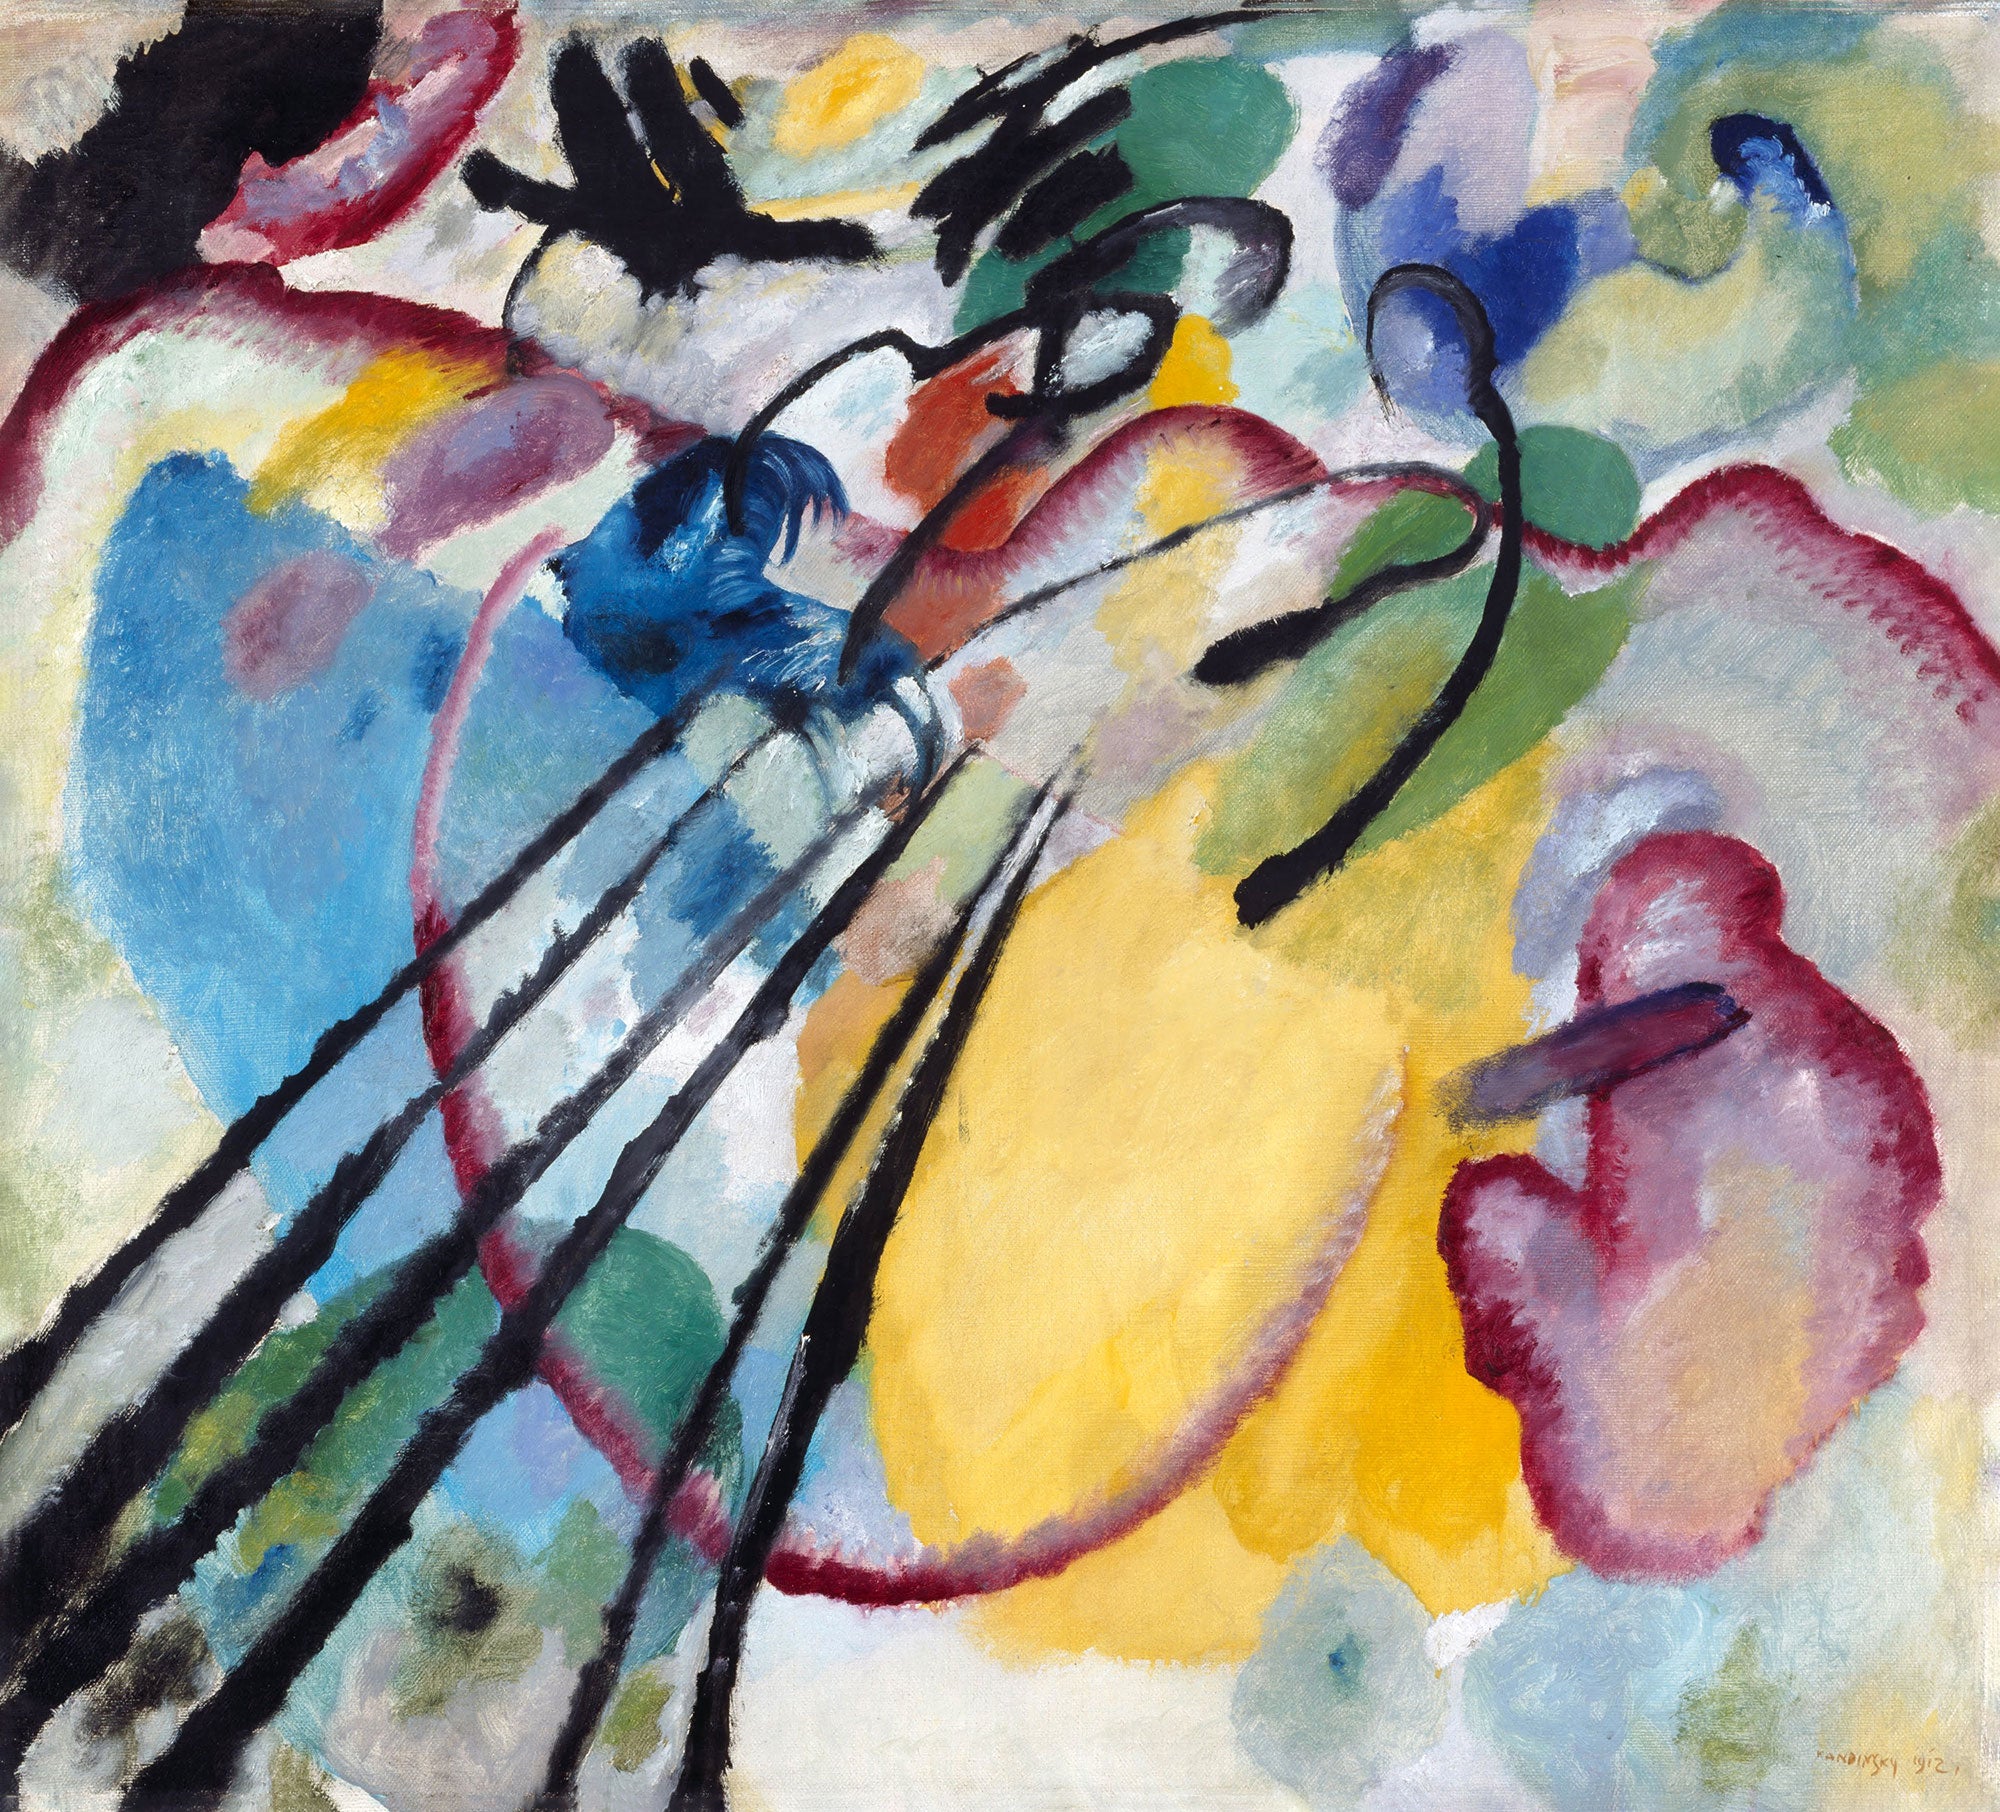 La abstracción en "Improvisación 26" de Kandinsky